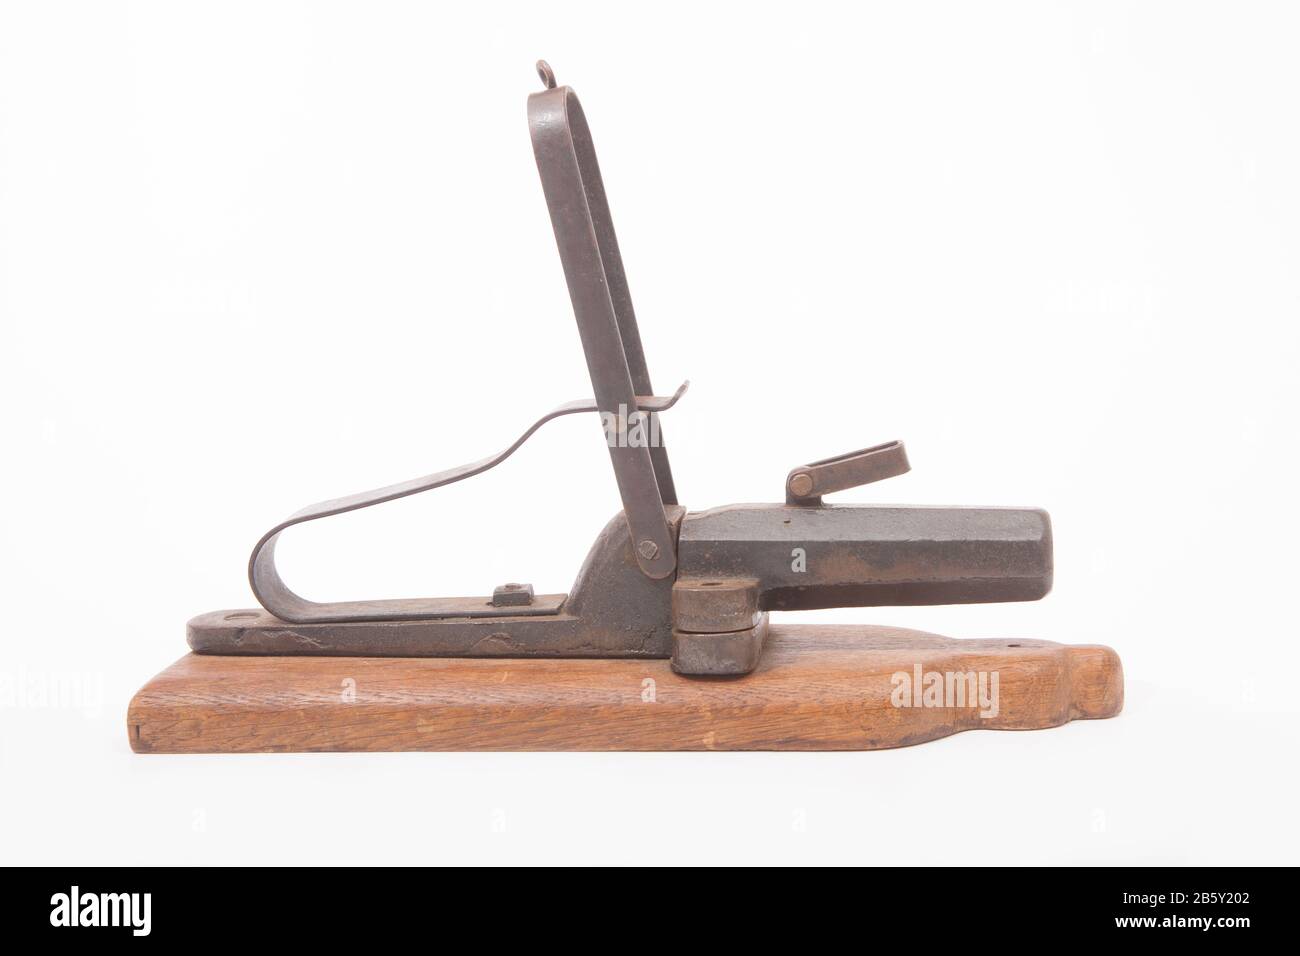 Eine alte, metallene Alarmpistole, die zur Abschreckung von Wilderern verwendet wird. Die Waffe konnte mit einer Flintenpatrone geladen werden und wurde von einem Auslösedraht beschossen. Der laute Knall wul Stockfoto